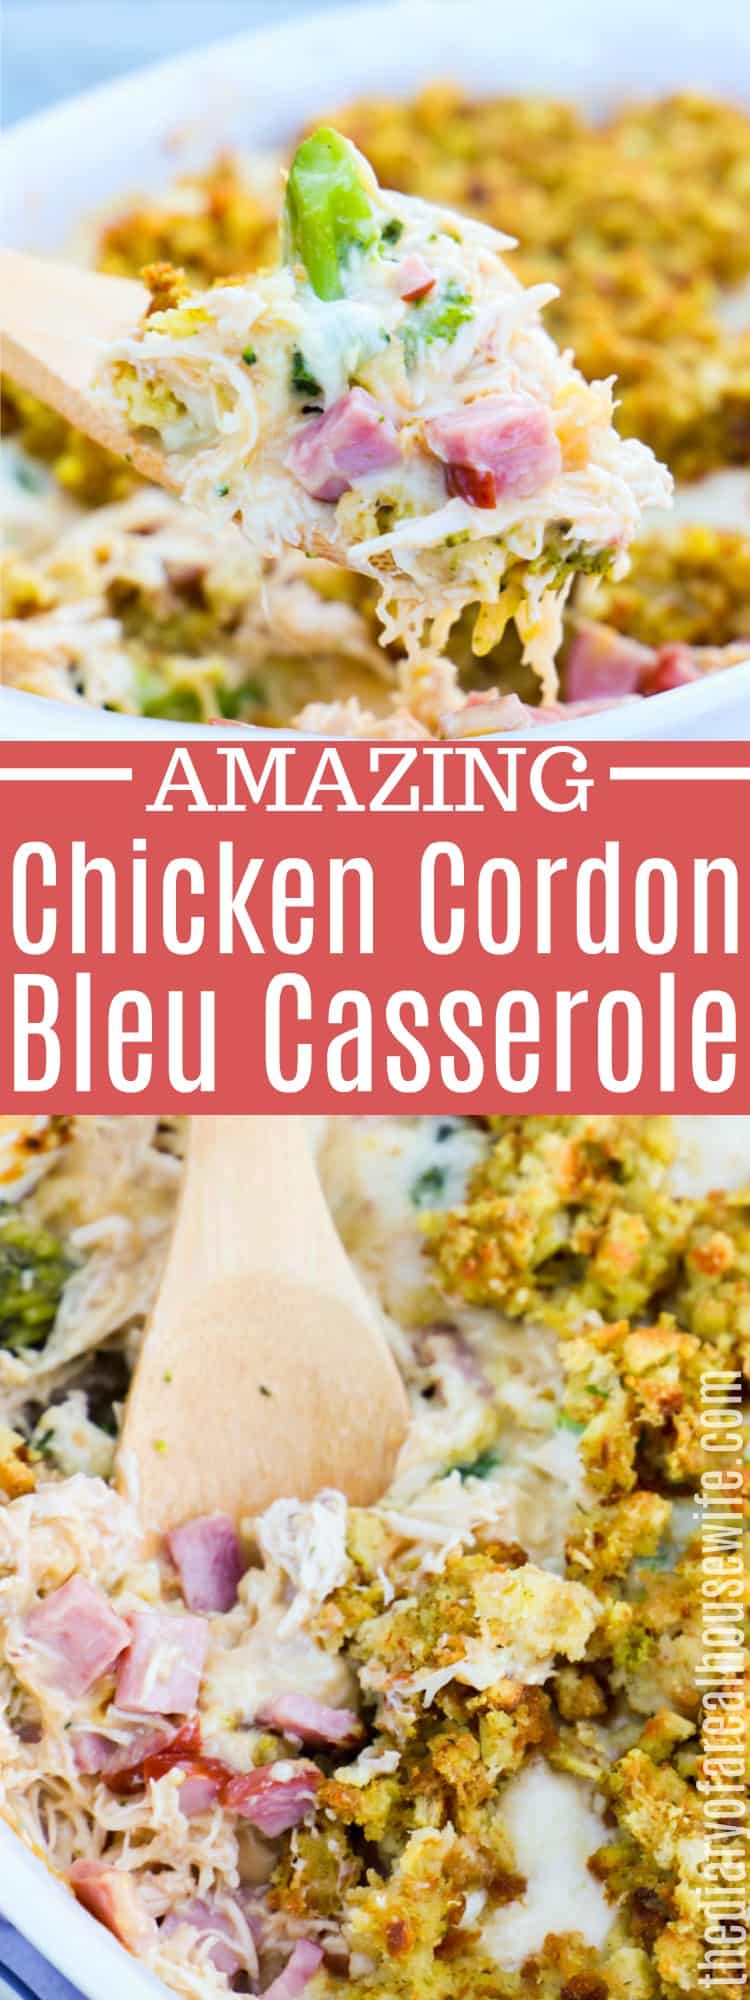 Chicken Cordon Bleu Casserole